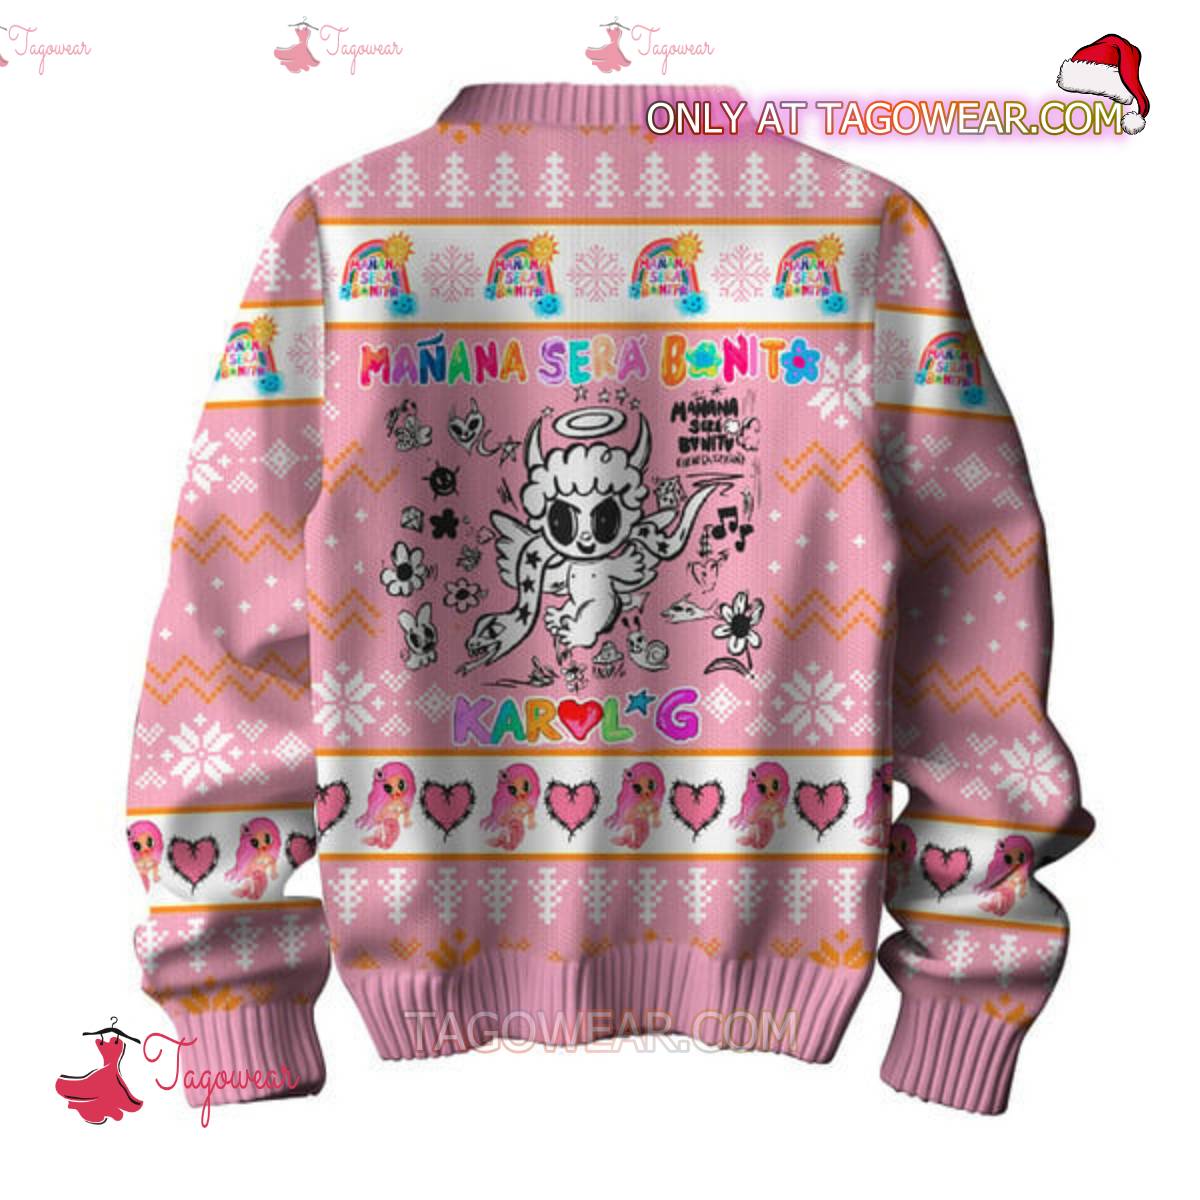 Manana Sera Bonito Karol G Christmas Sweater b